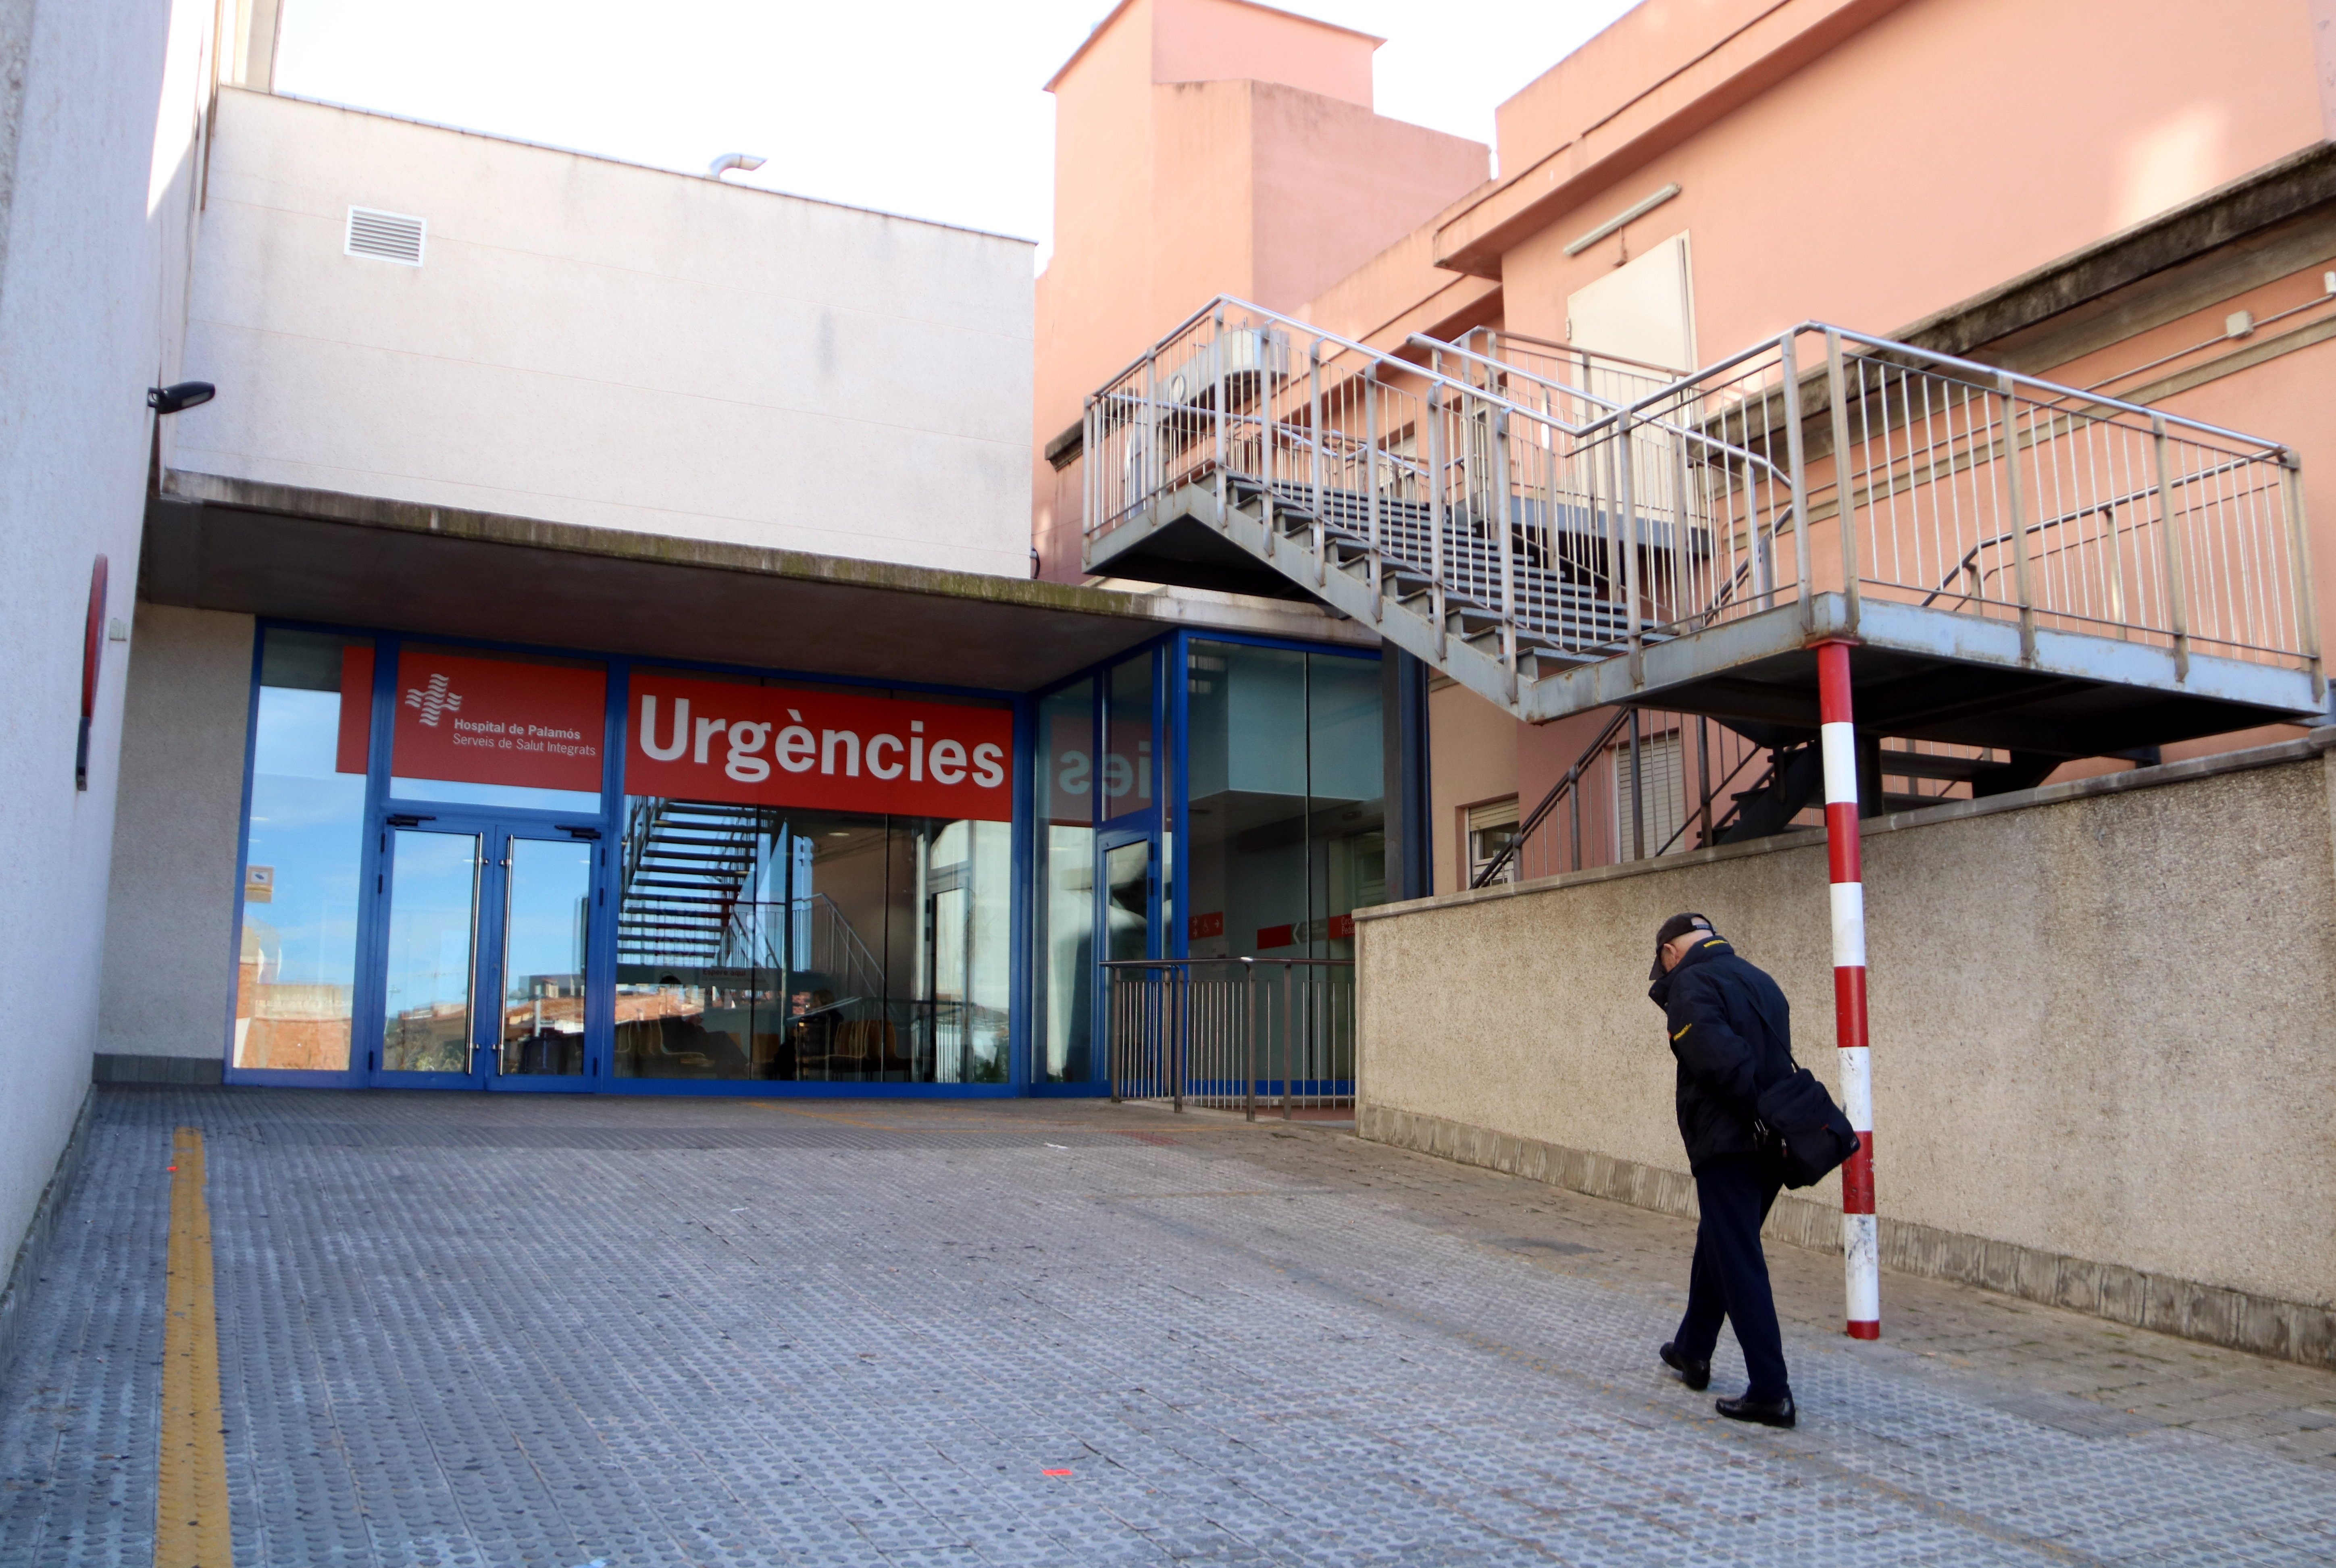 El Hospital de Palamós responde: la muerte de la mujer en urgencias no es una negligencia